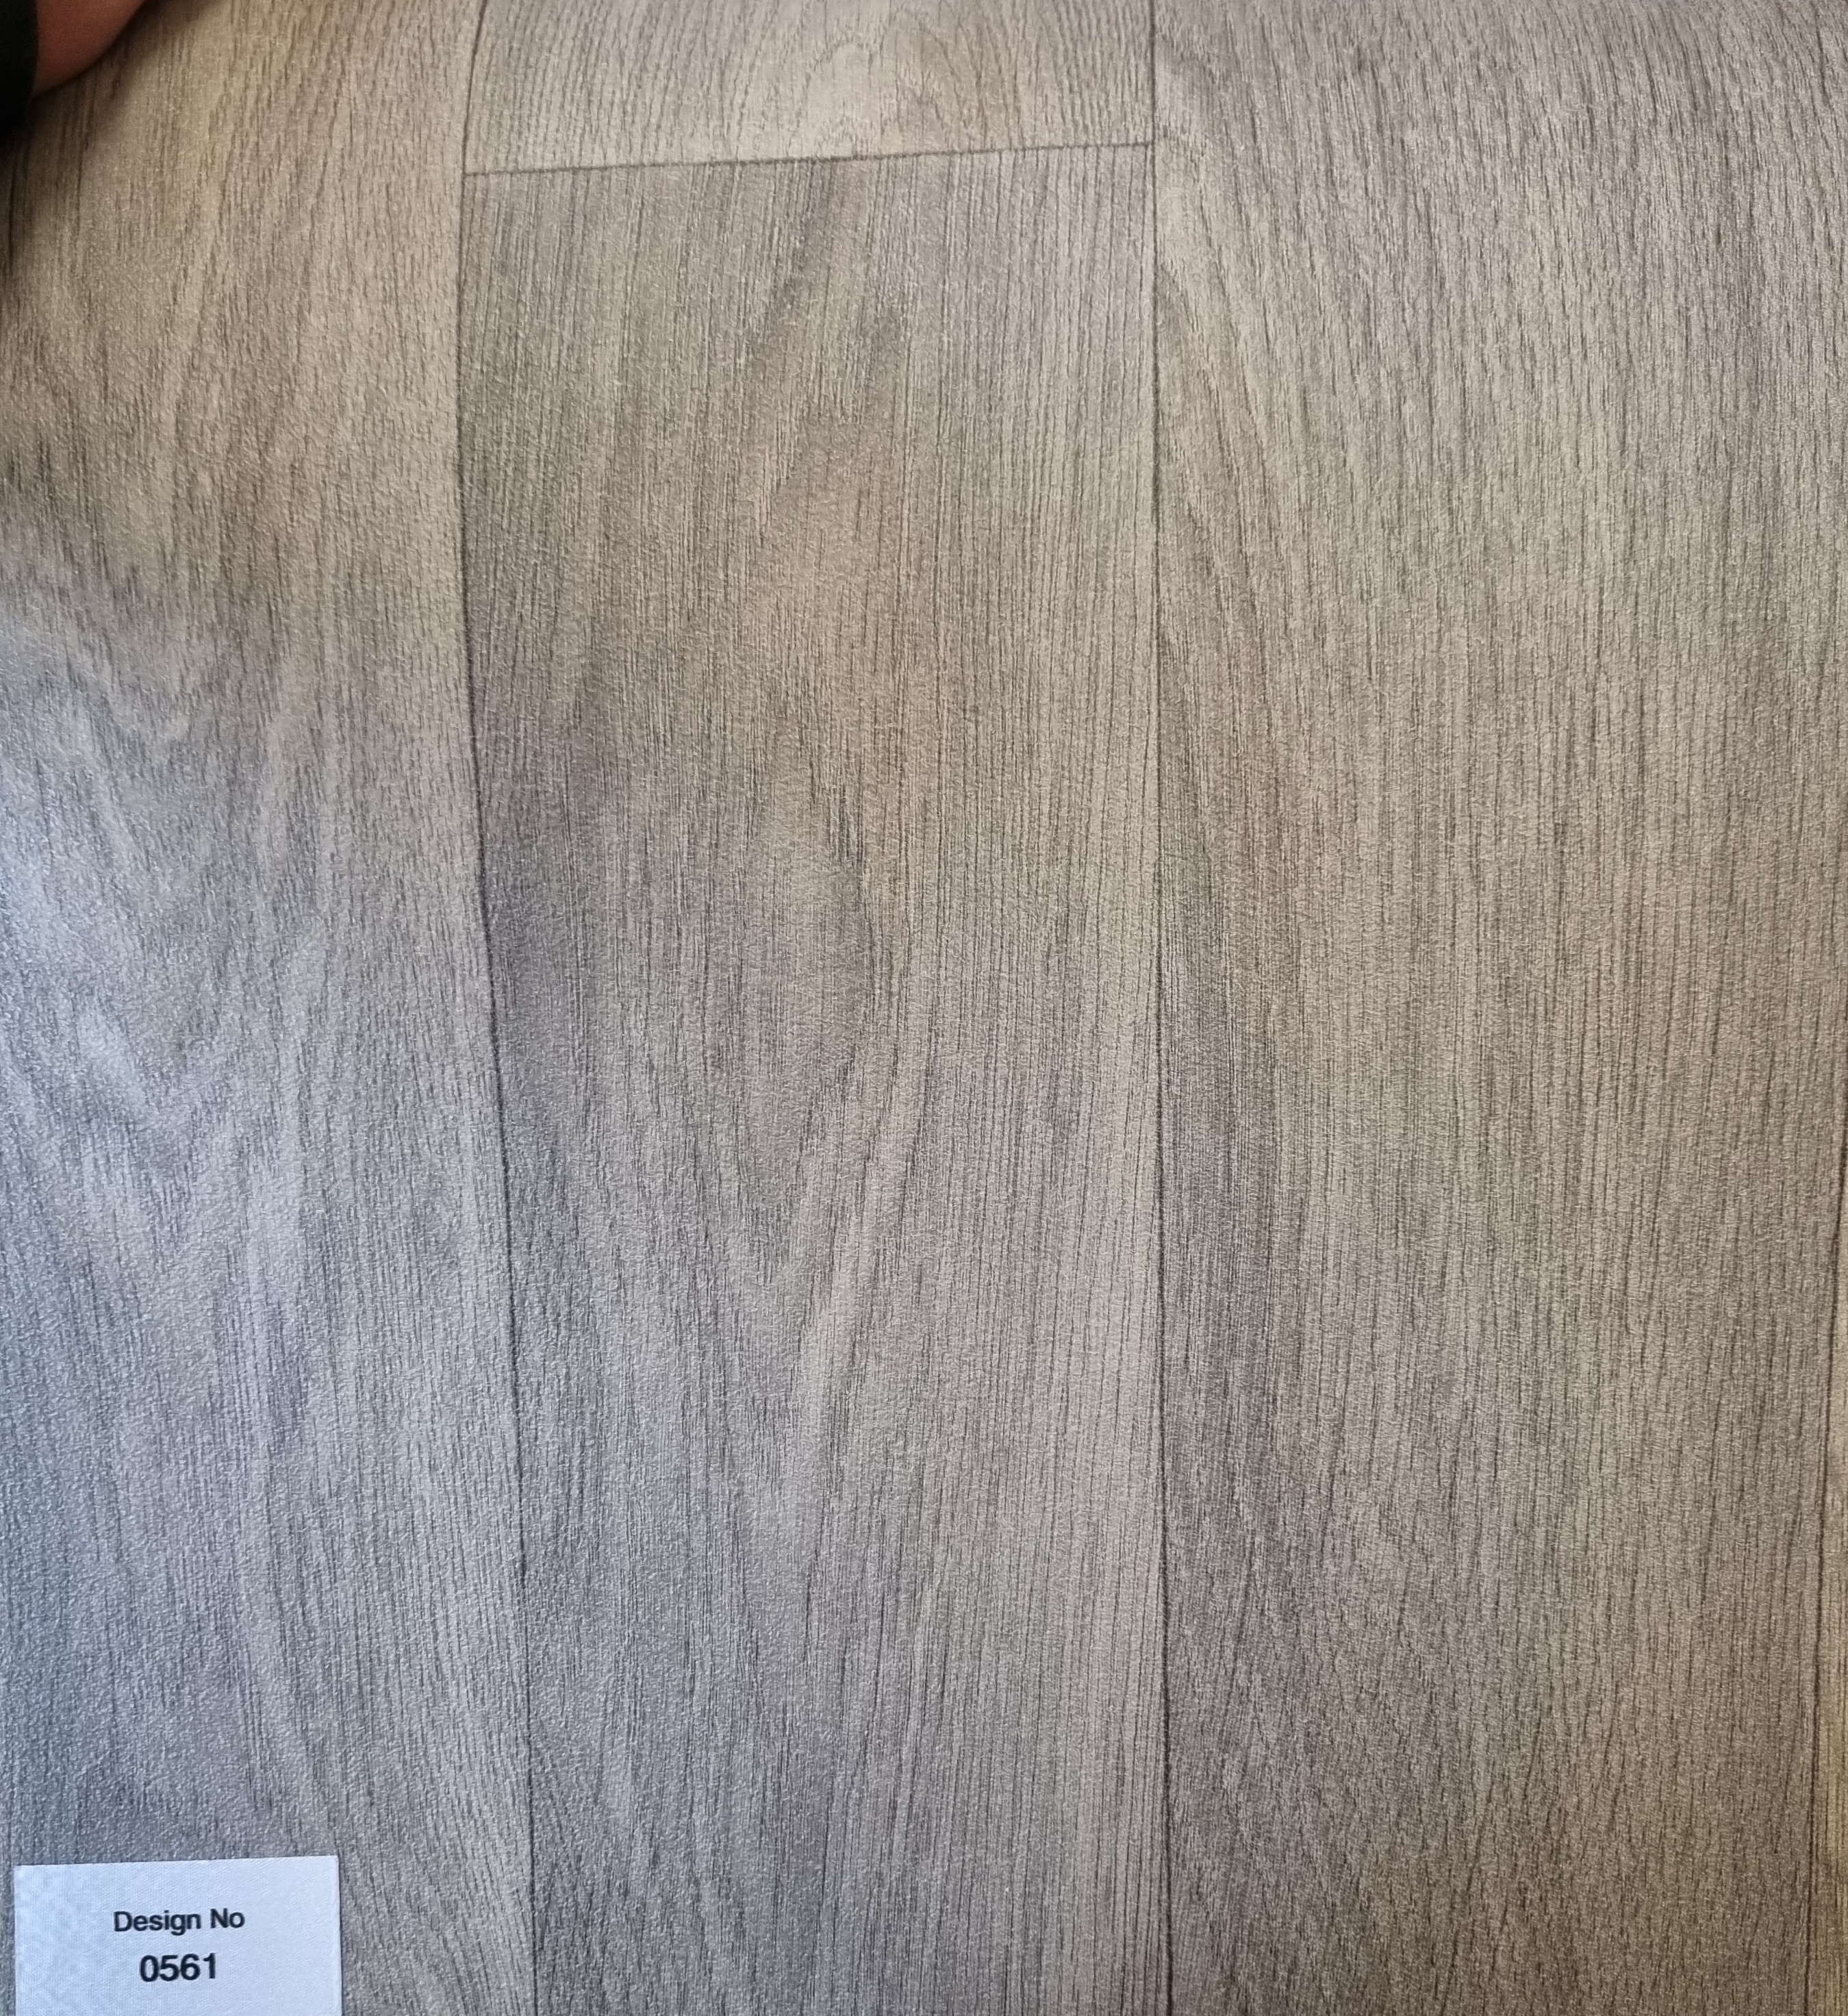 Smartex vinyl flooring